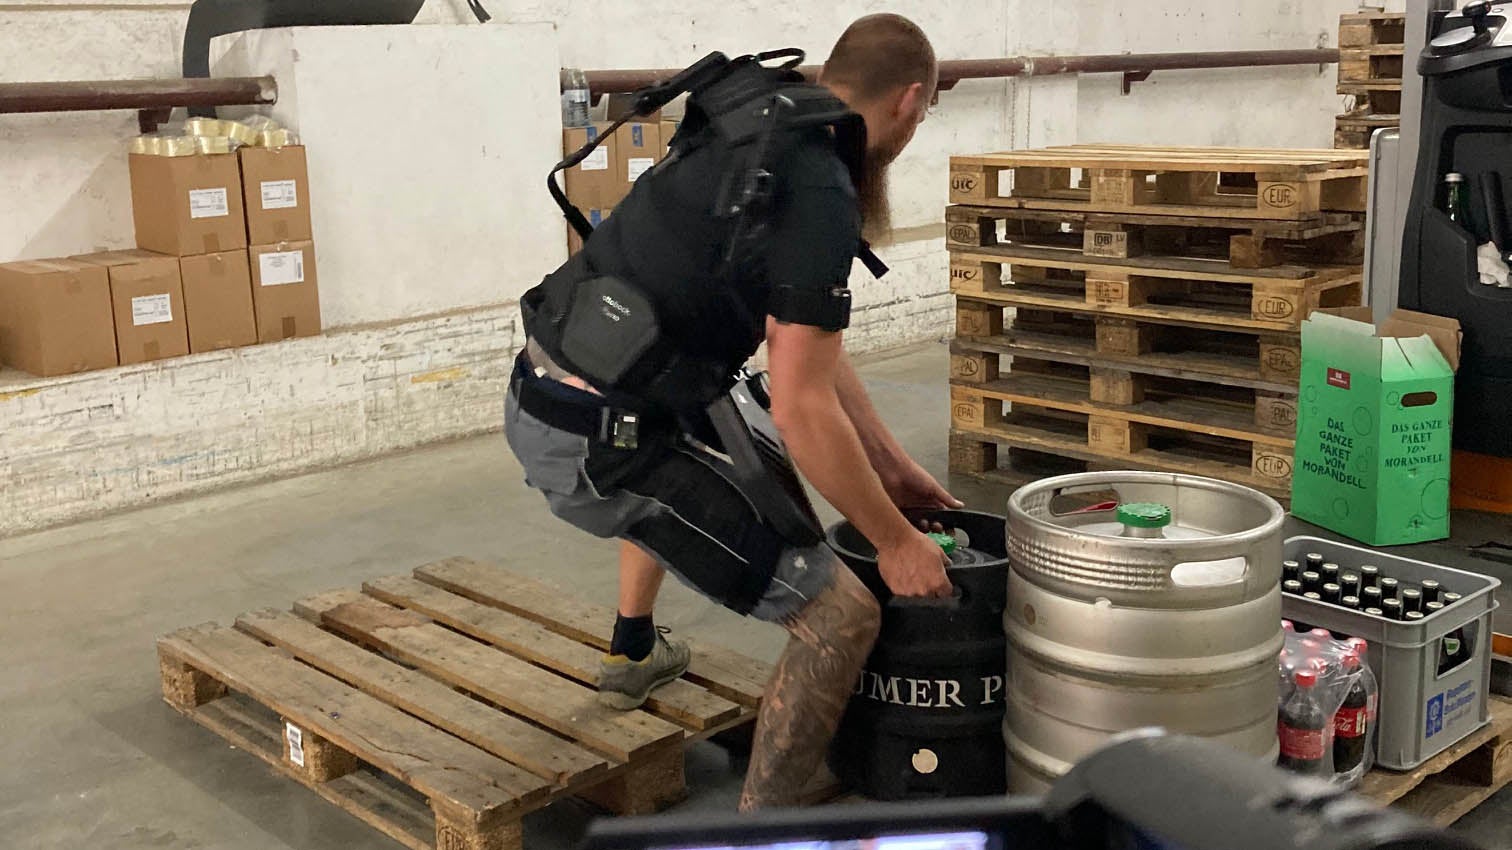 Das Bild zeigt einen Arbeiter mit angelegtem Exoskelett beim Heben eines Bierfasses vom Boden auf eine Palette. Bei dieser Tätigkeit wird er von einem Captiv-Motion-System gefilmt.